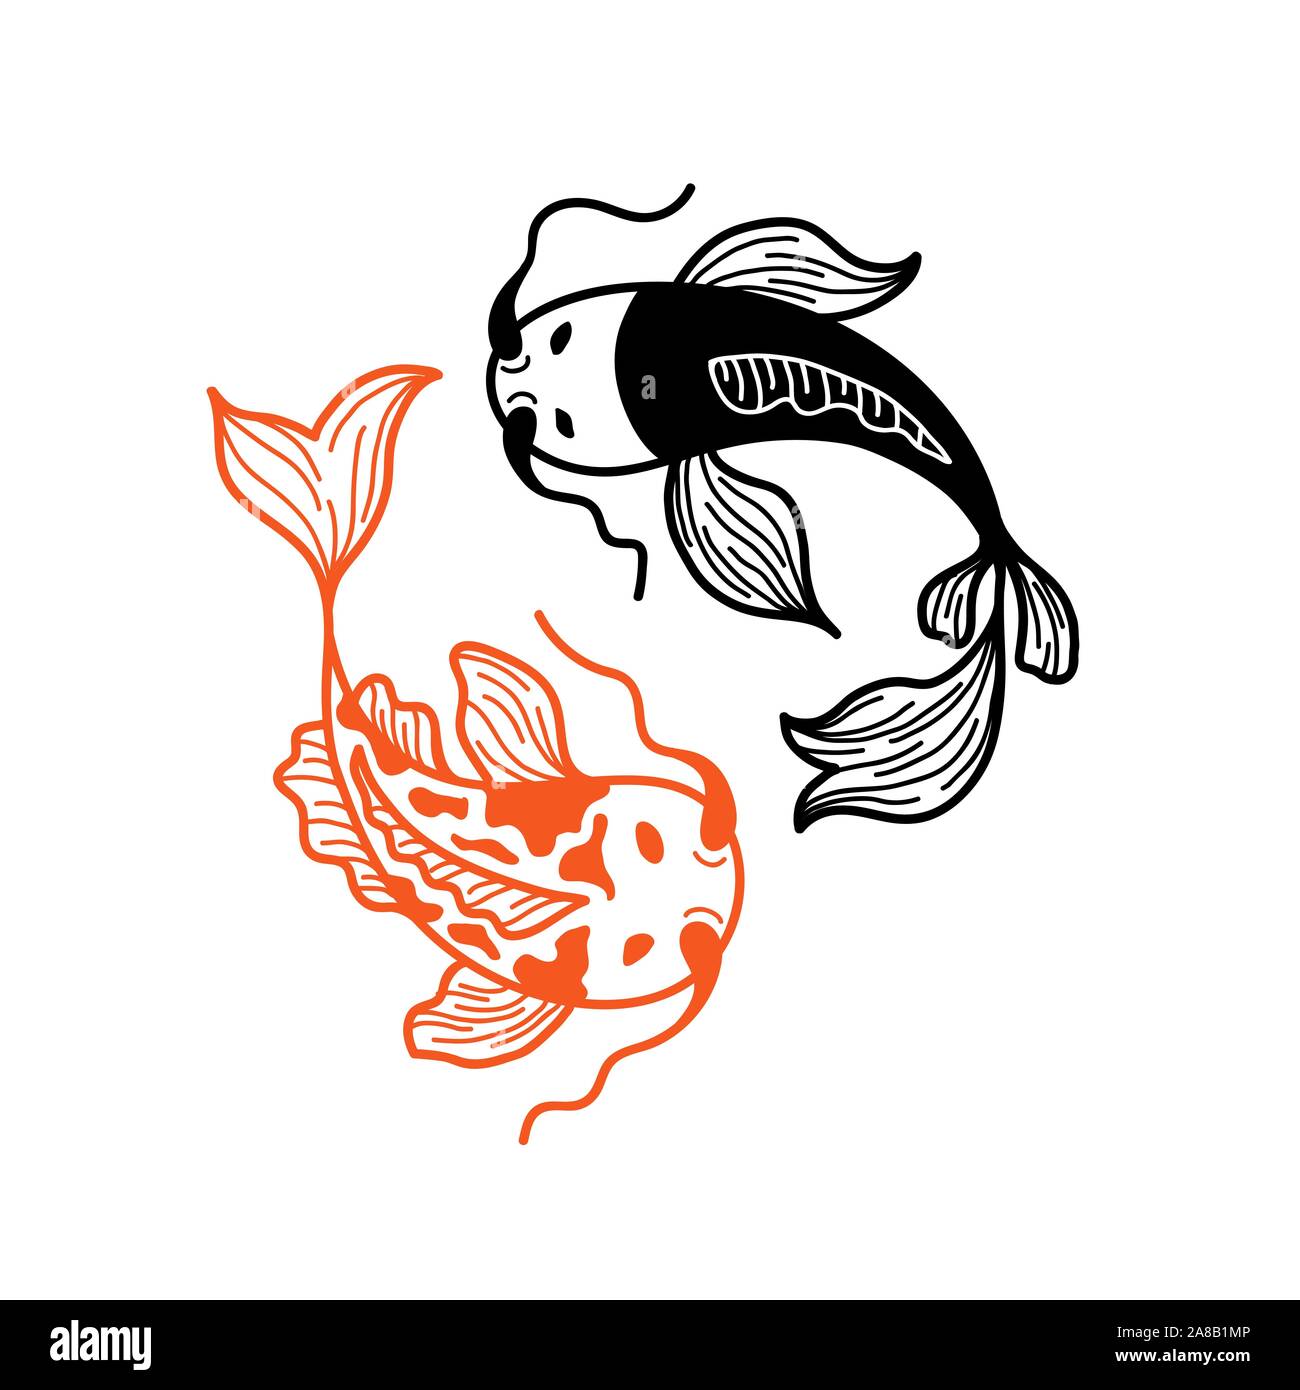 Deux poissons Koi Carp japonais isolé sur fond blanc. Couple de poissons asiatiques dans un style traditionnel. Logo Design pour Restaurant Sushi Menu. Thème Yin Yang Illustration de Vecteur